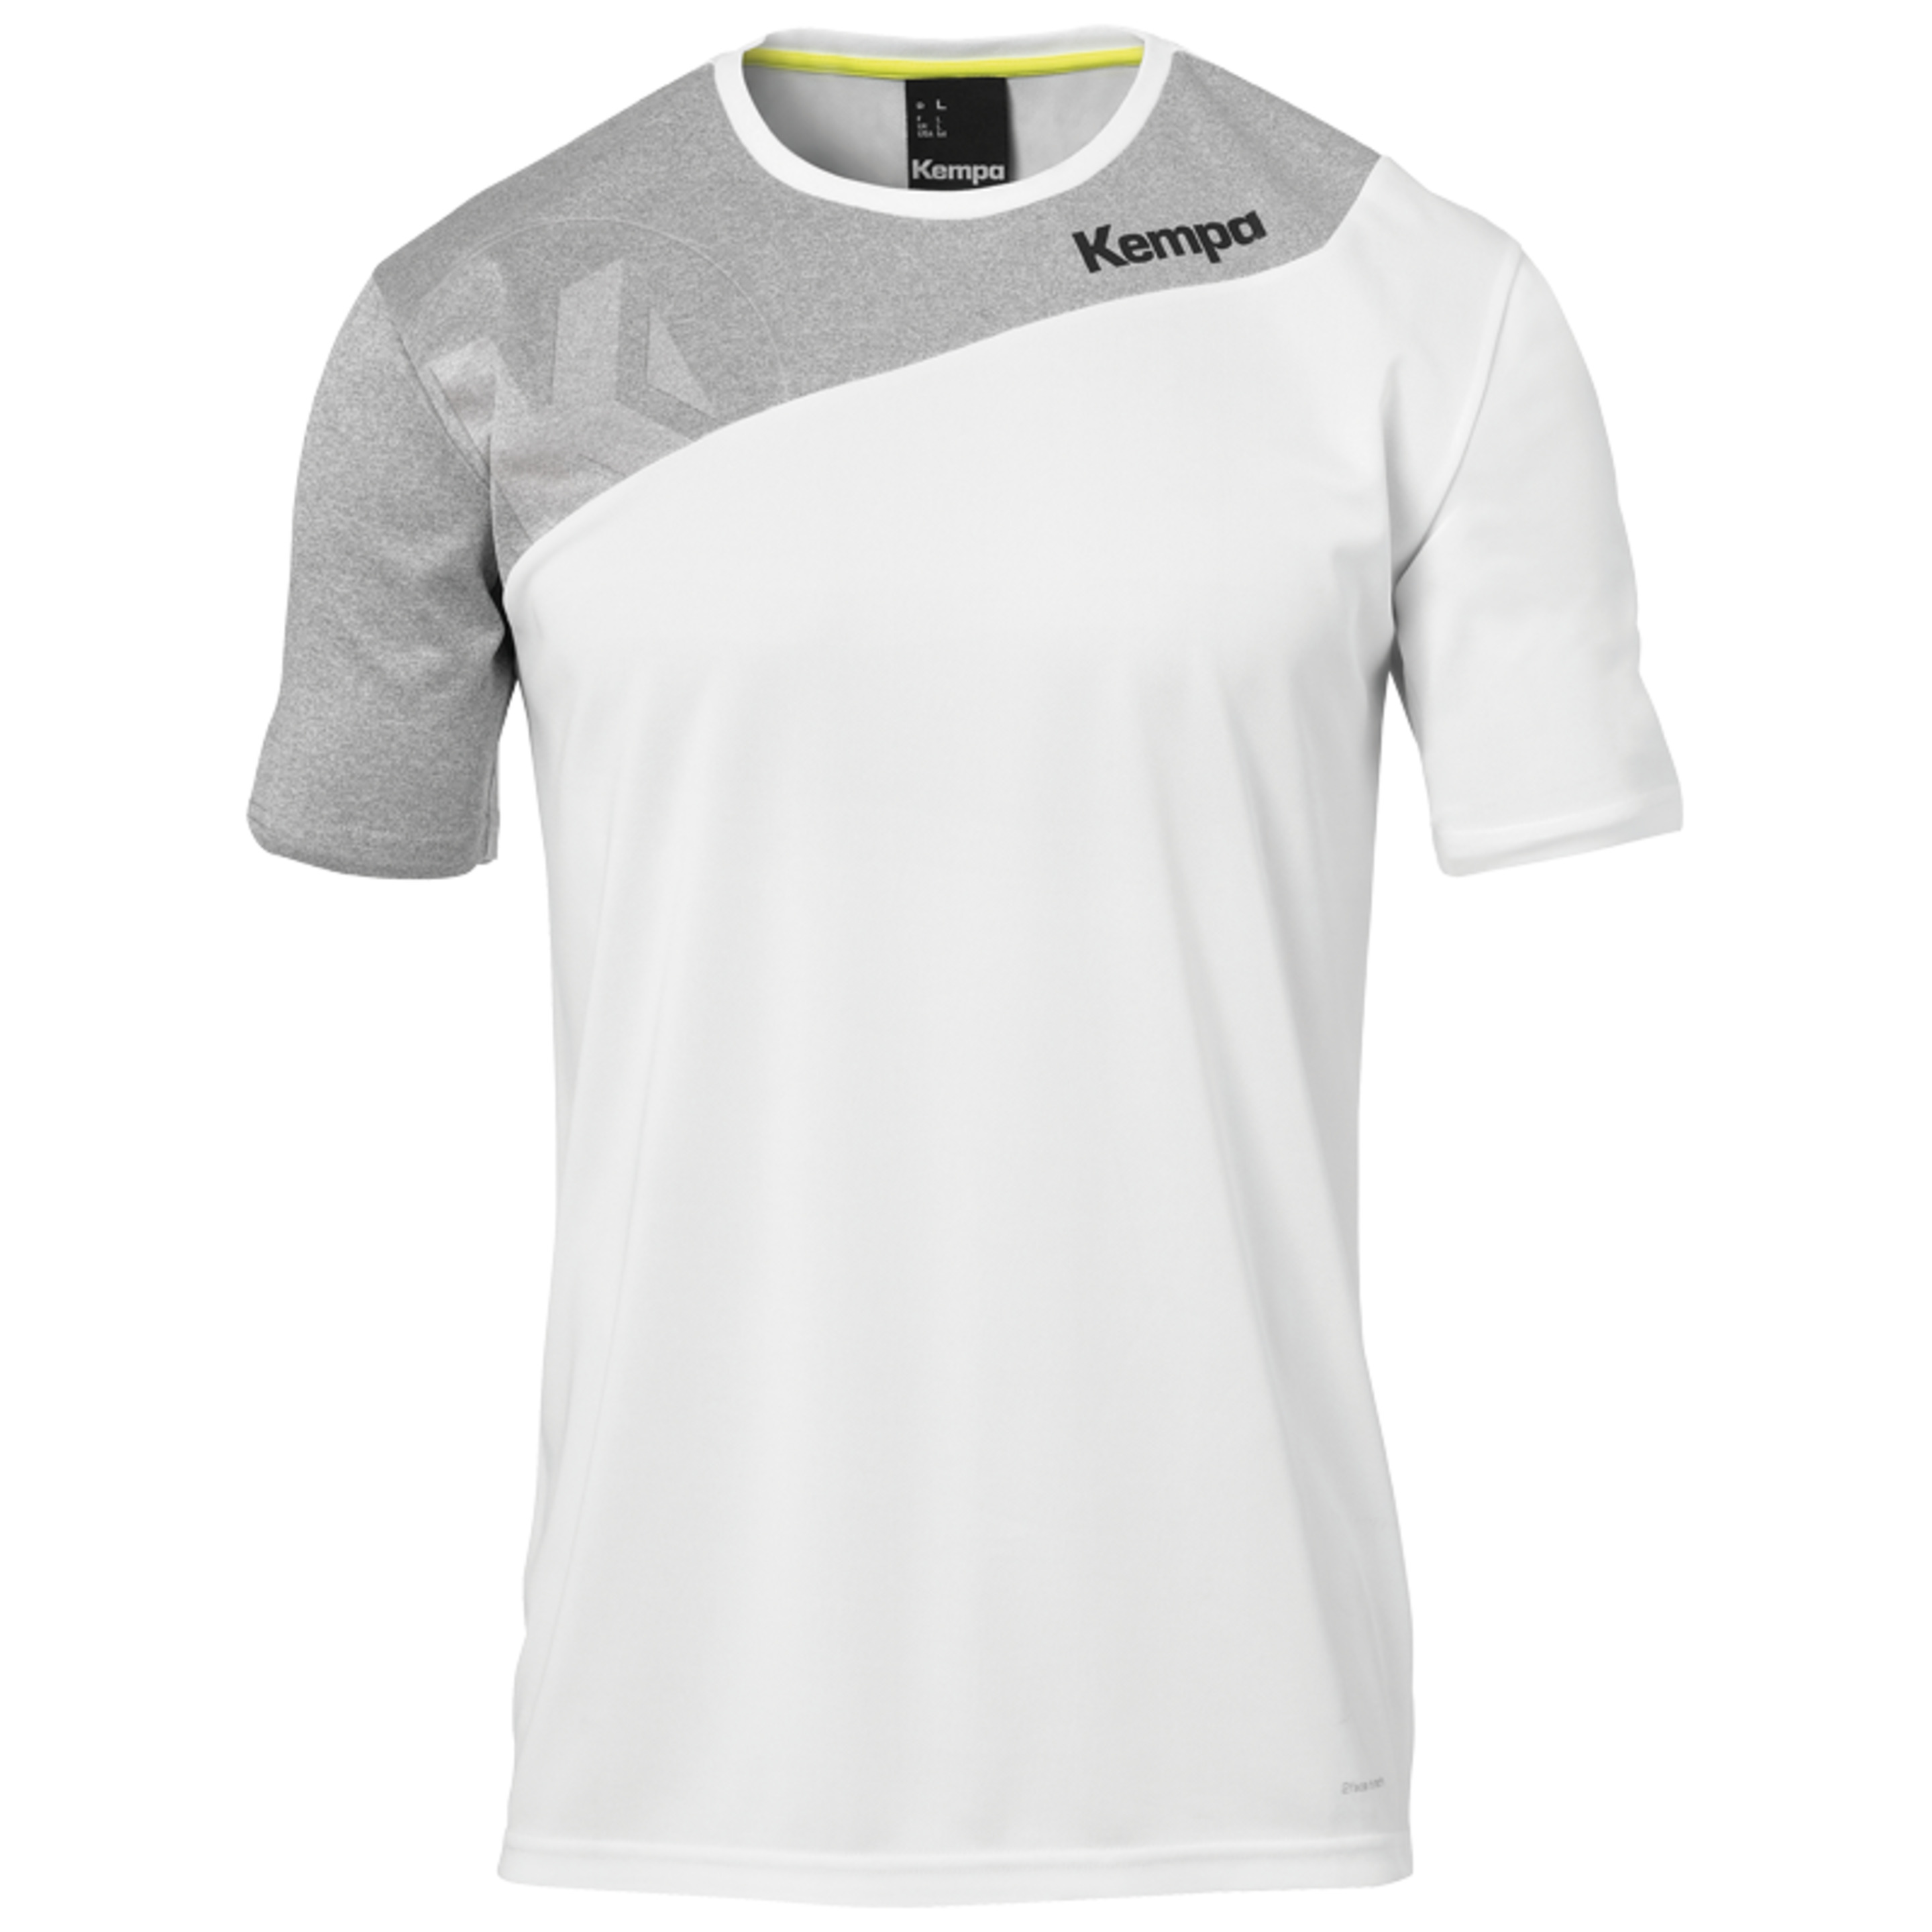 Core 2.0 Shirt Blanco/gris Oscuro Mezcla Kempa - blanco - Core 2.0 Shirt Blanco/gris Oscuro Mezcla Kempa  MKP